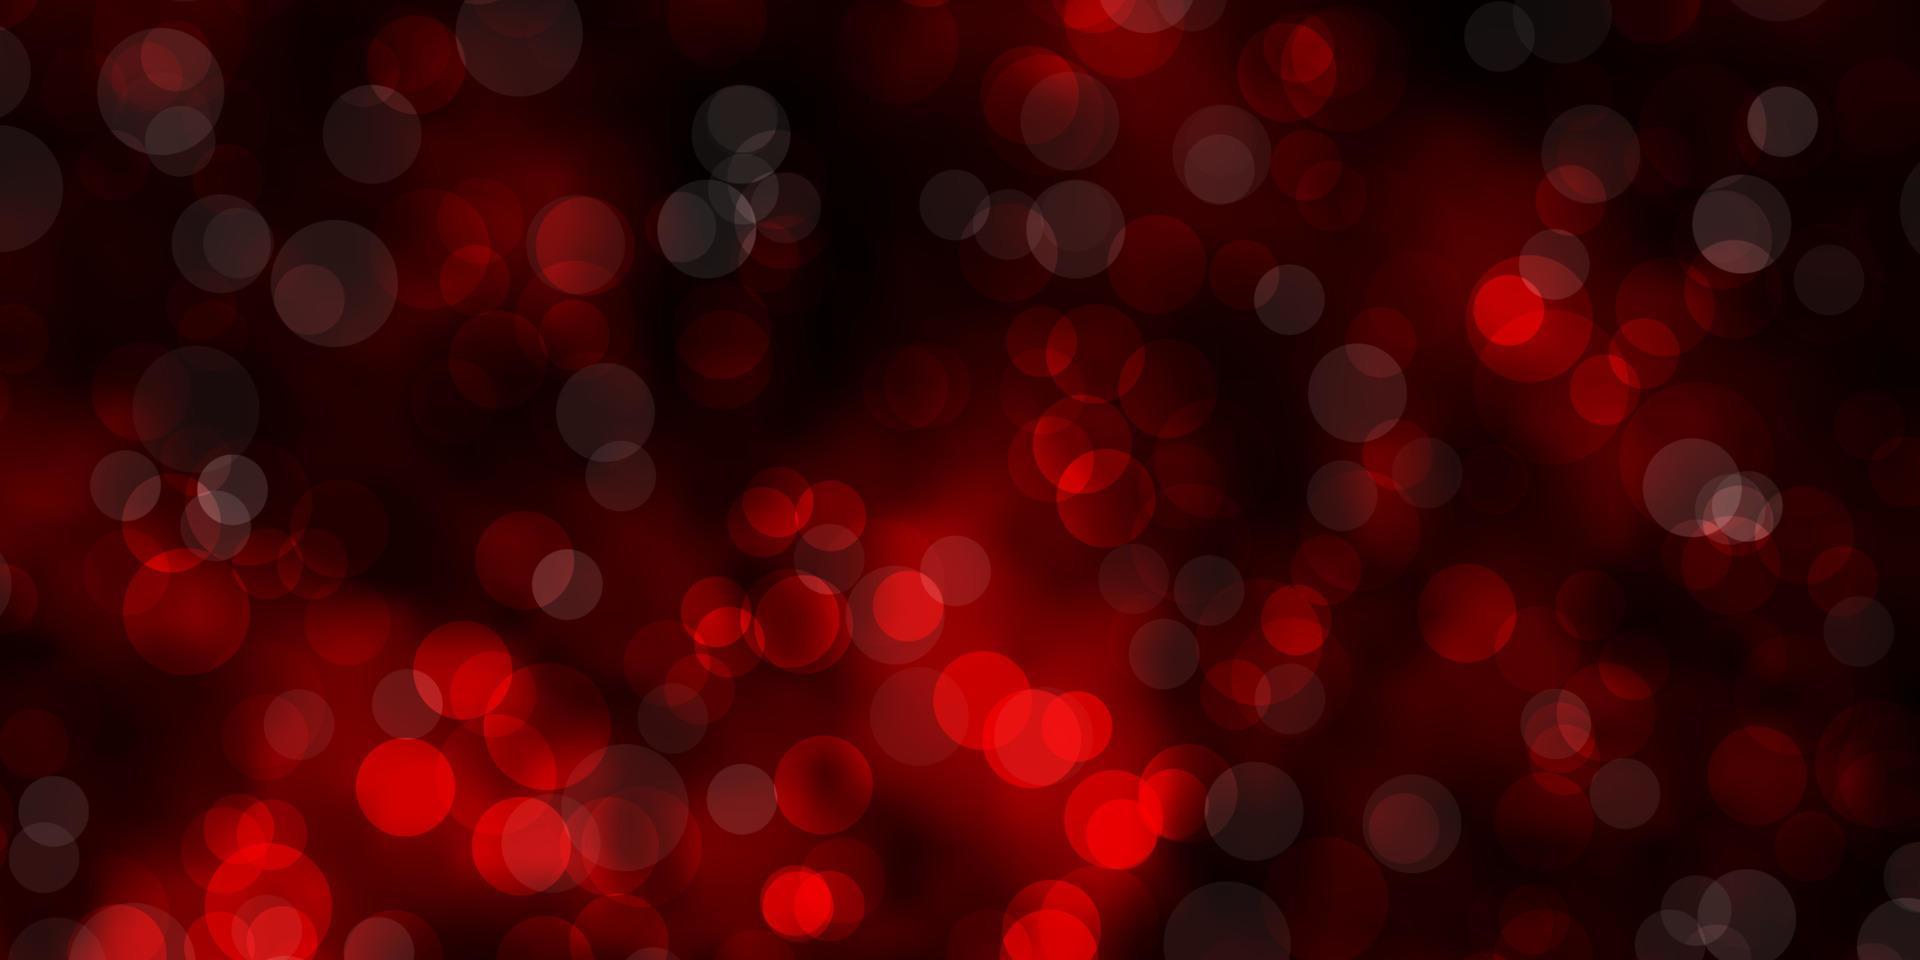 sfondo vettoriale rosso scuro con bolle.